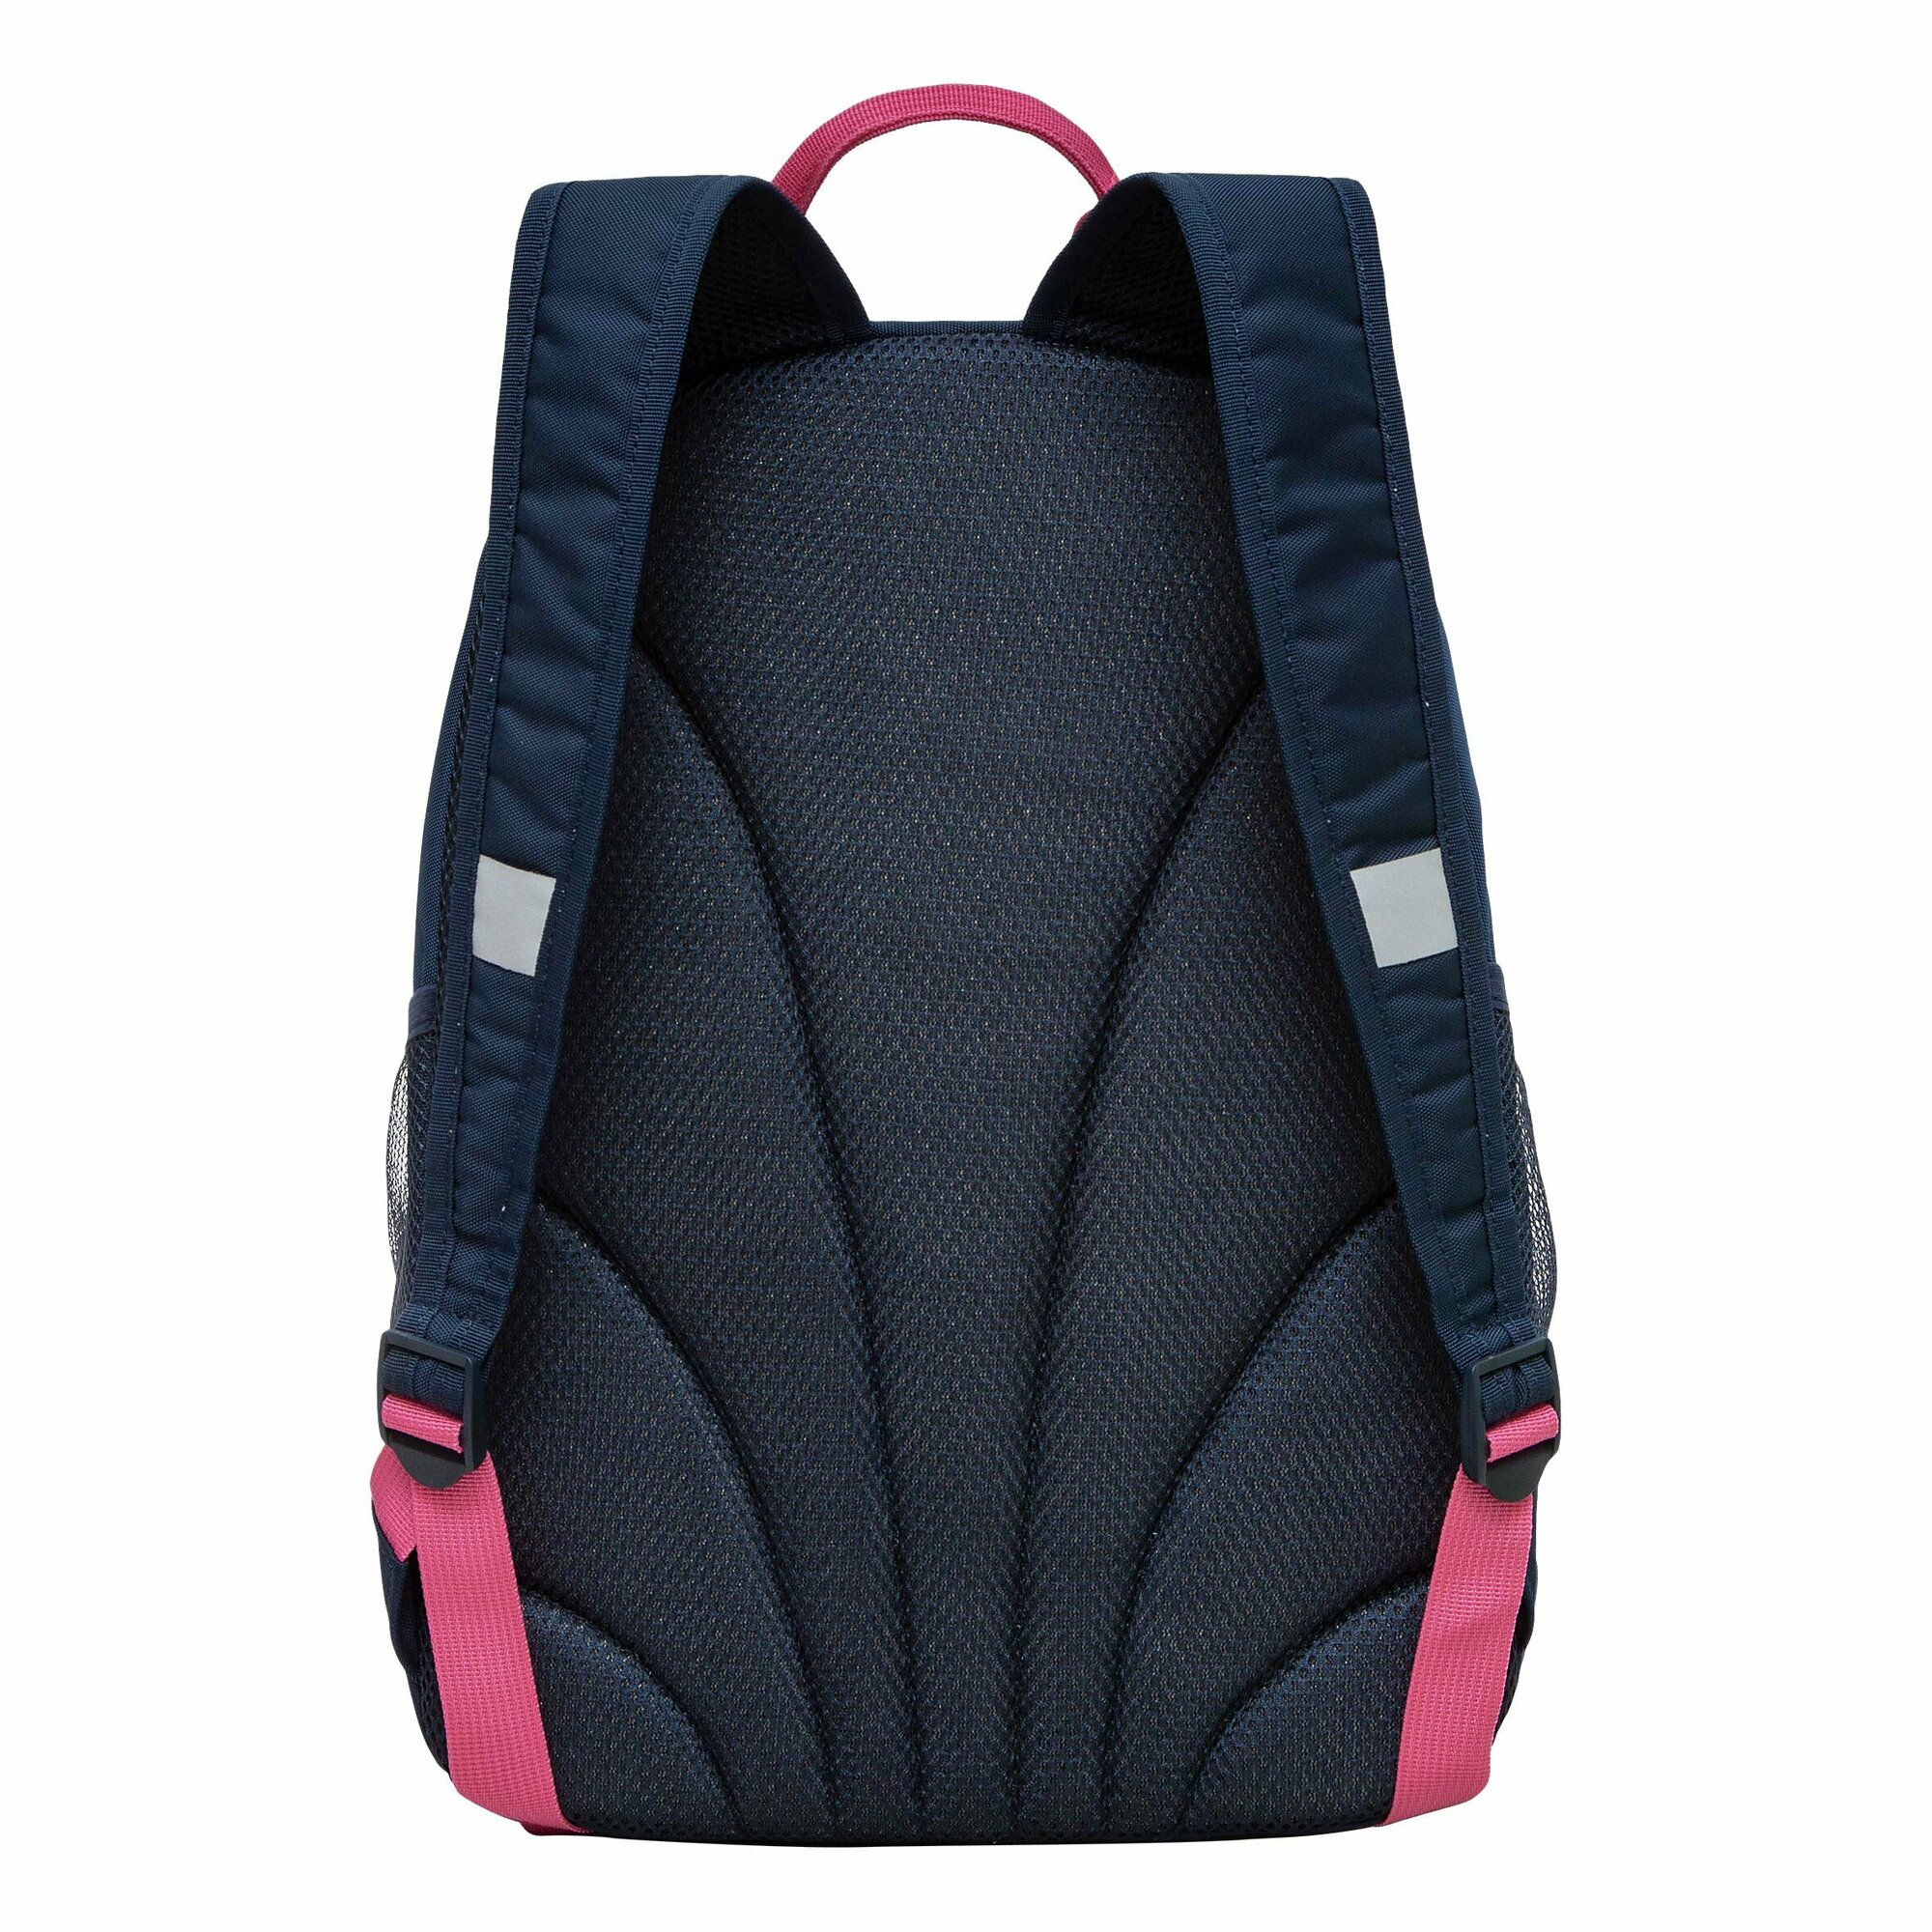 Рюкзак школьный GRIZZLY с карманом для ноутбука 13", жесткой спинкой, двумя отделениями, для девочки RG-463-6/1